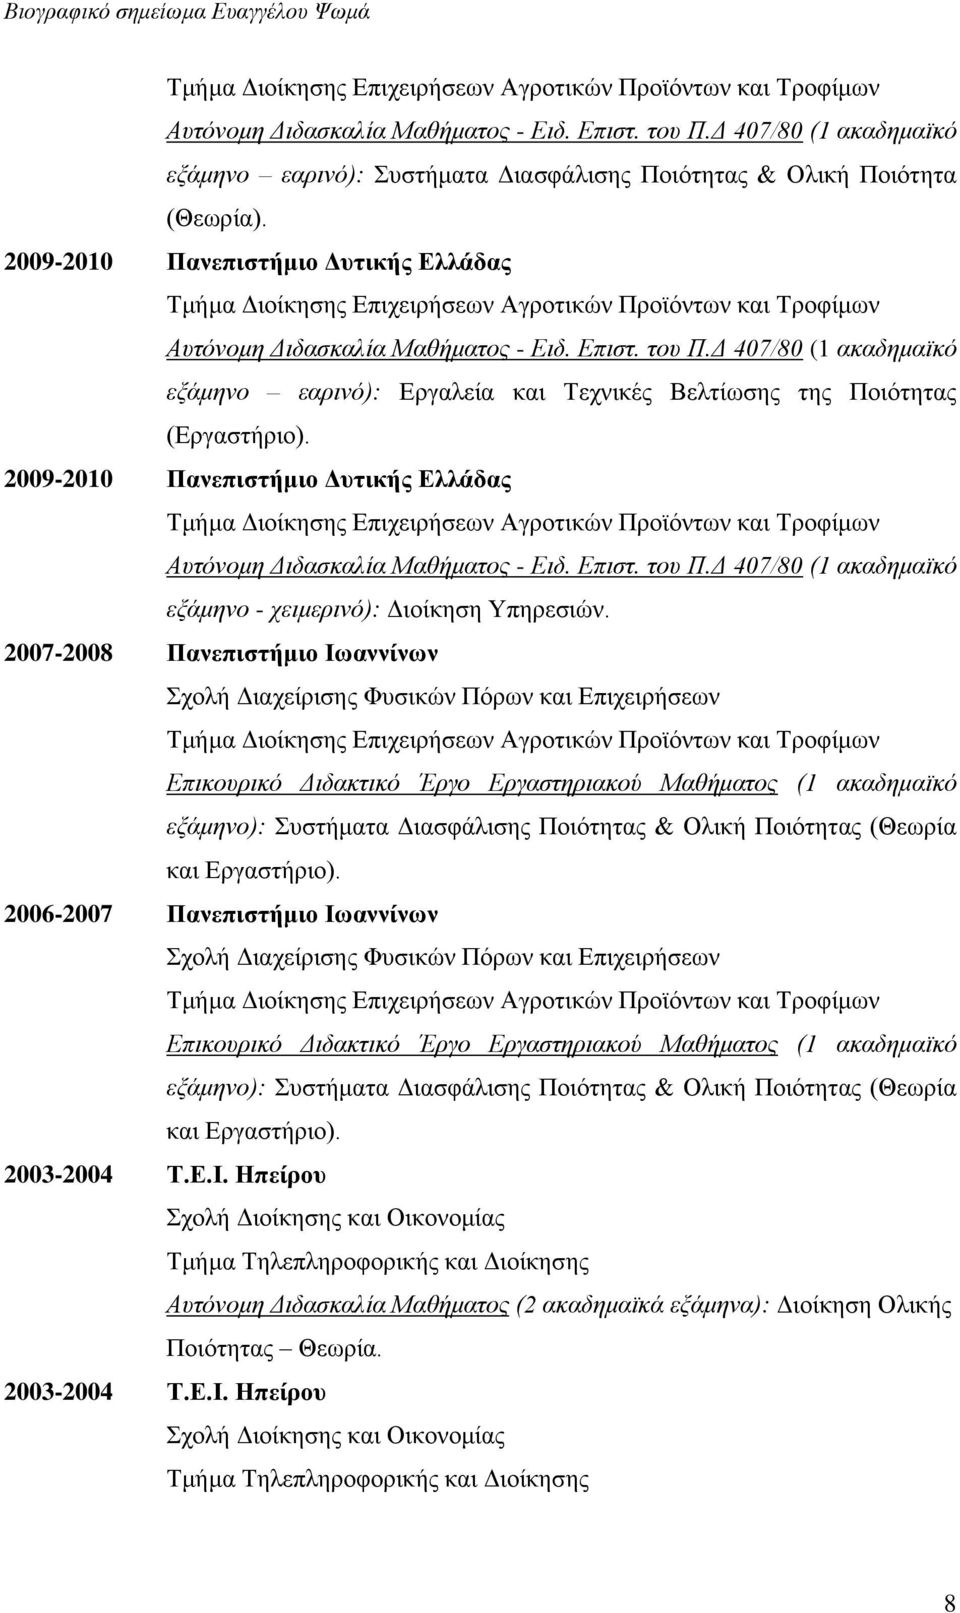 2007-2008 Πανεπιστήμιο Ιωαννίνων Σχολή Διαχείρισης Φυσικών Πόρων και Επιχειρήσεων Επικουρικό Διδακτικό Έργο Εργαστηριακού Μαθήματος (1 ακαδημαϊκό εξάμηνο): Συστήματα Διασφάλισης Ποιότητας & Ολική